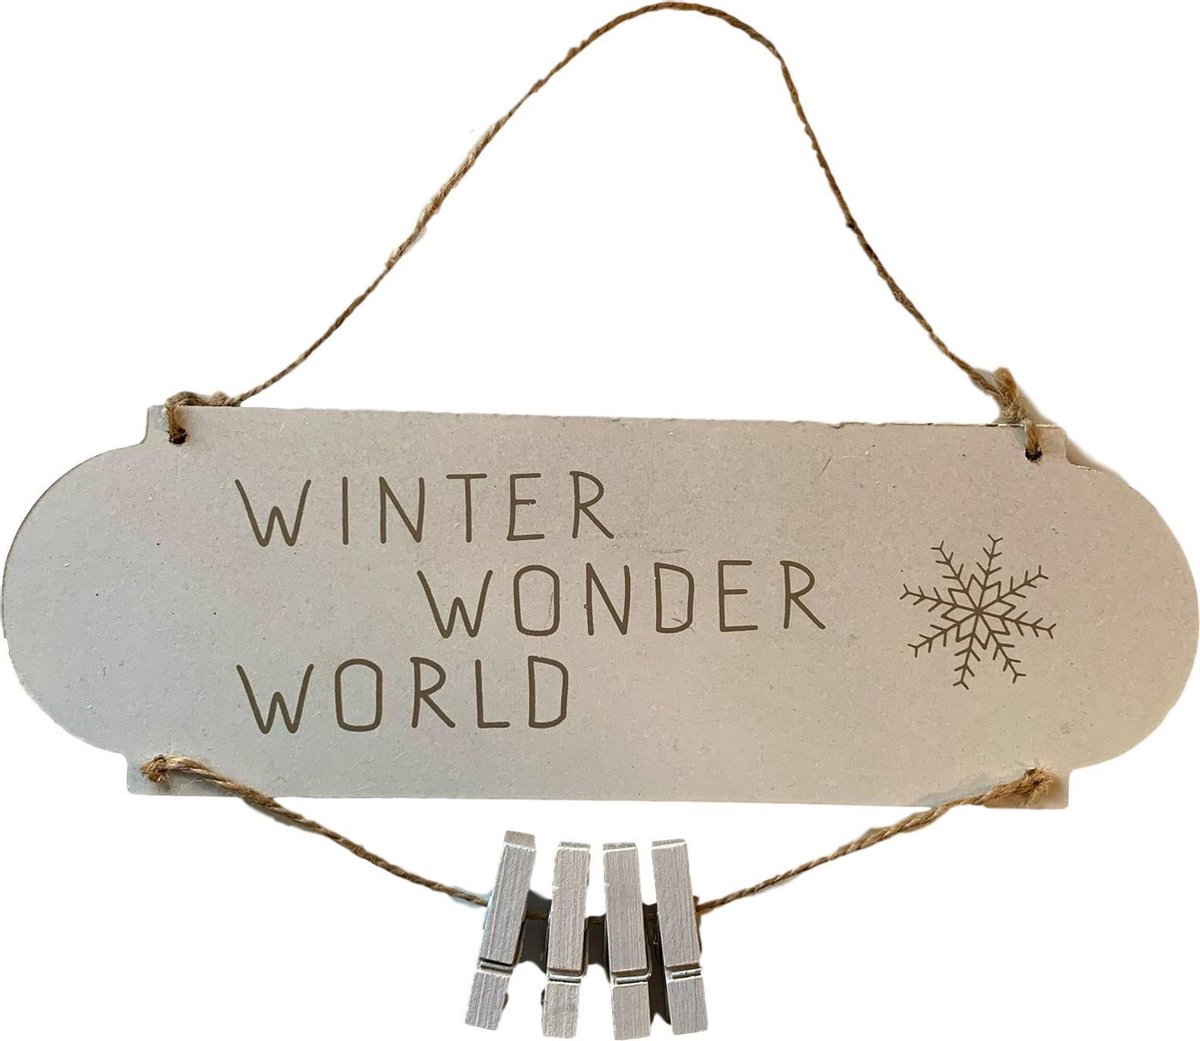 Winter Wonder World - Hang decoratie met knijpers - Hout